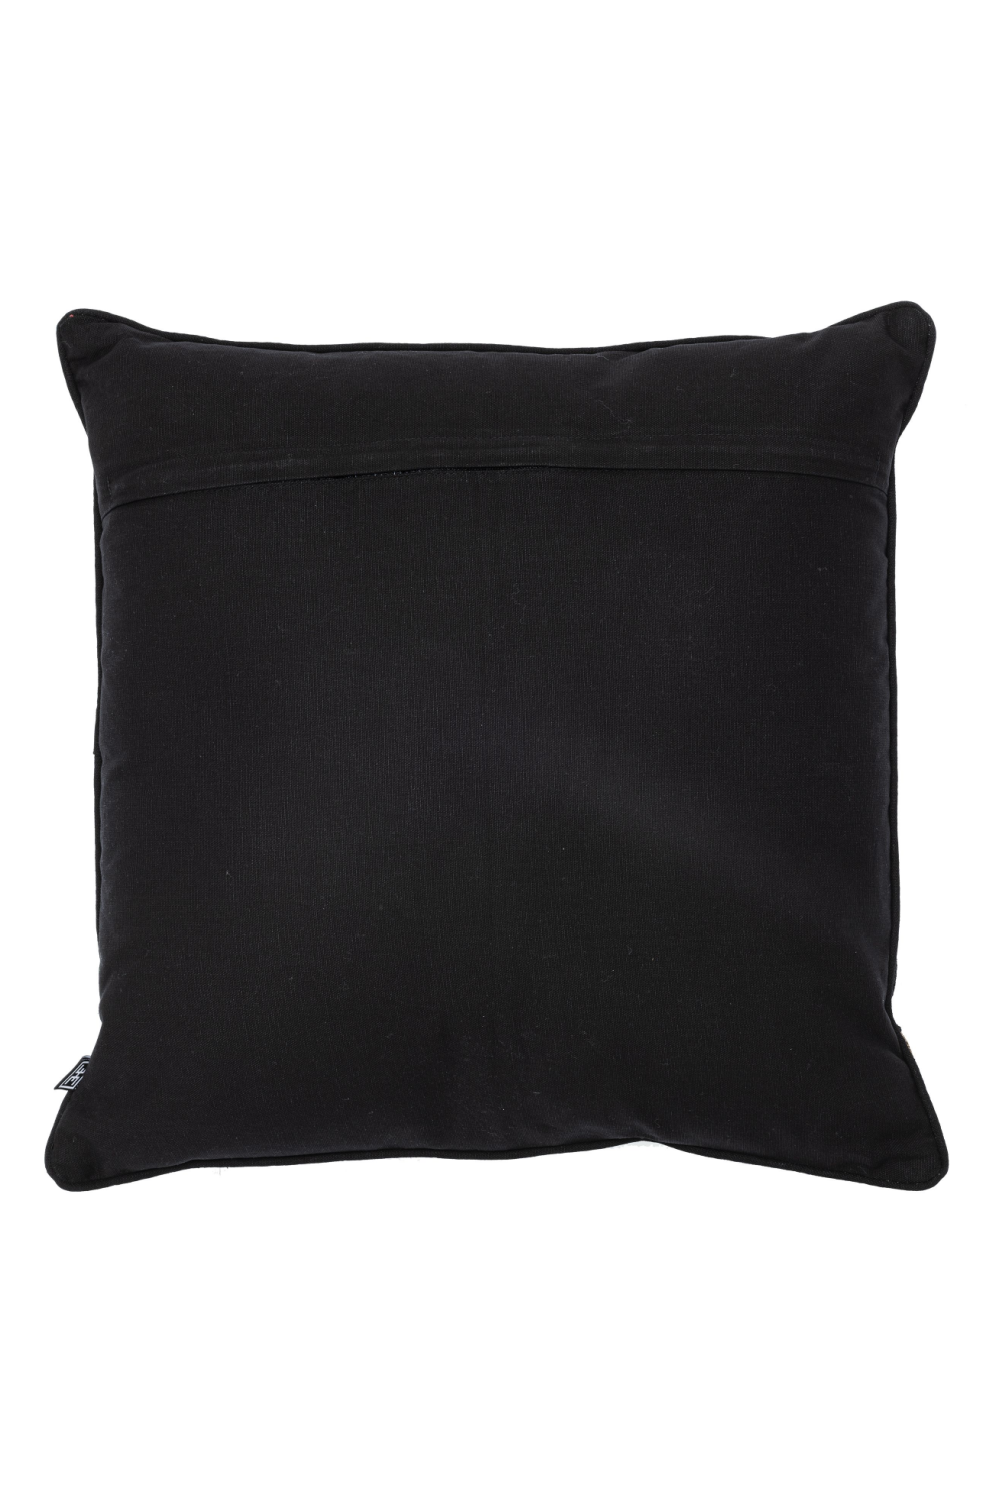 Black & Gold Square Pillow | Eichholtz Mist | Oroa.com